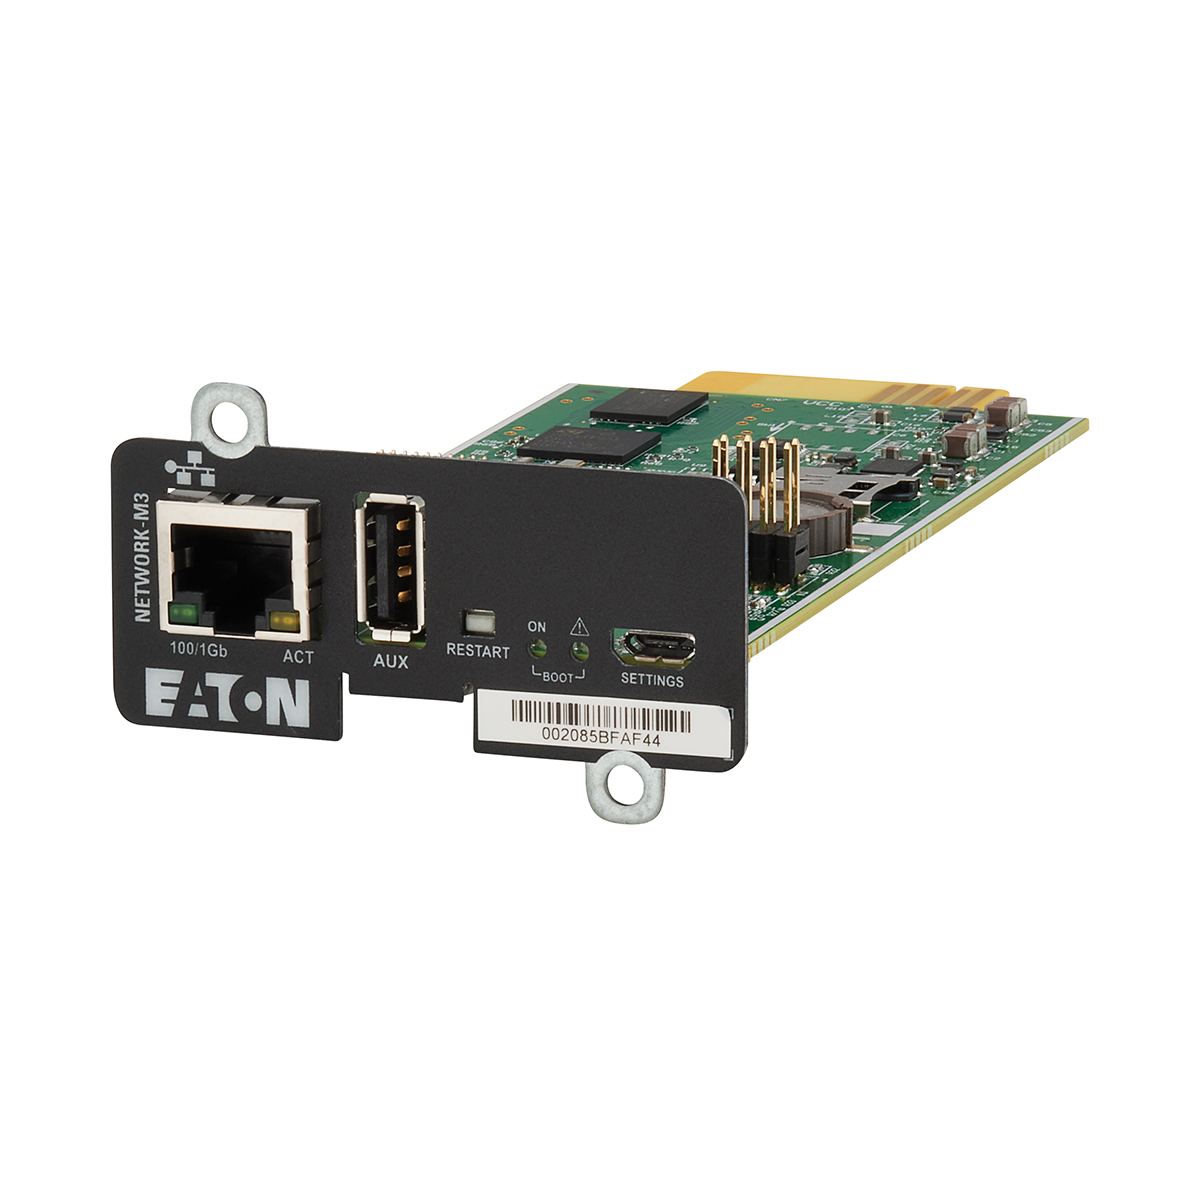 Eaton NETWORK-M3 Gigabit Mini-Slot Network Card